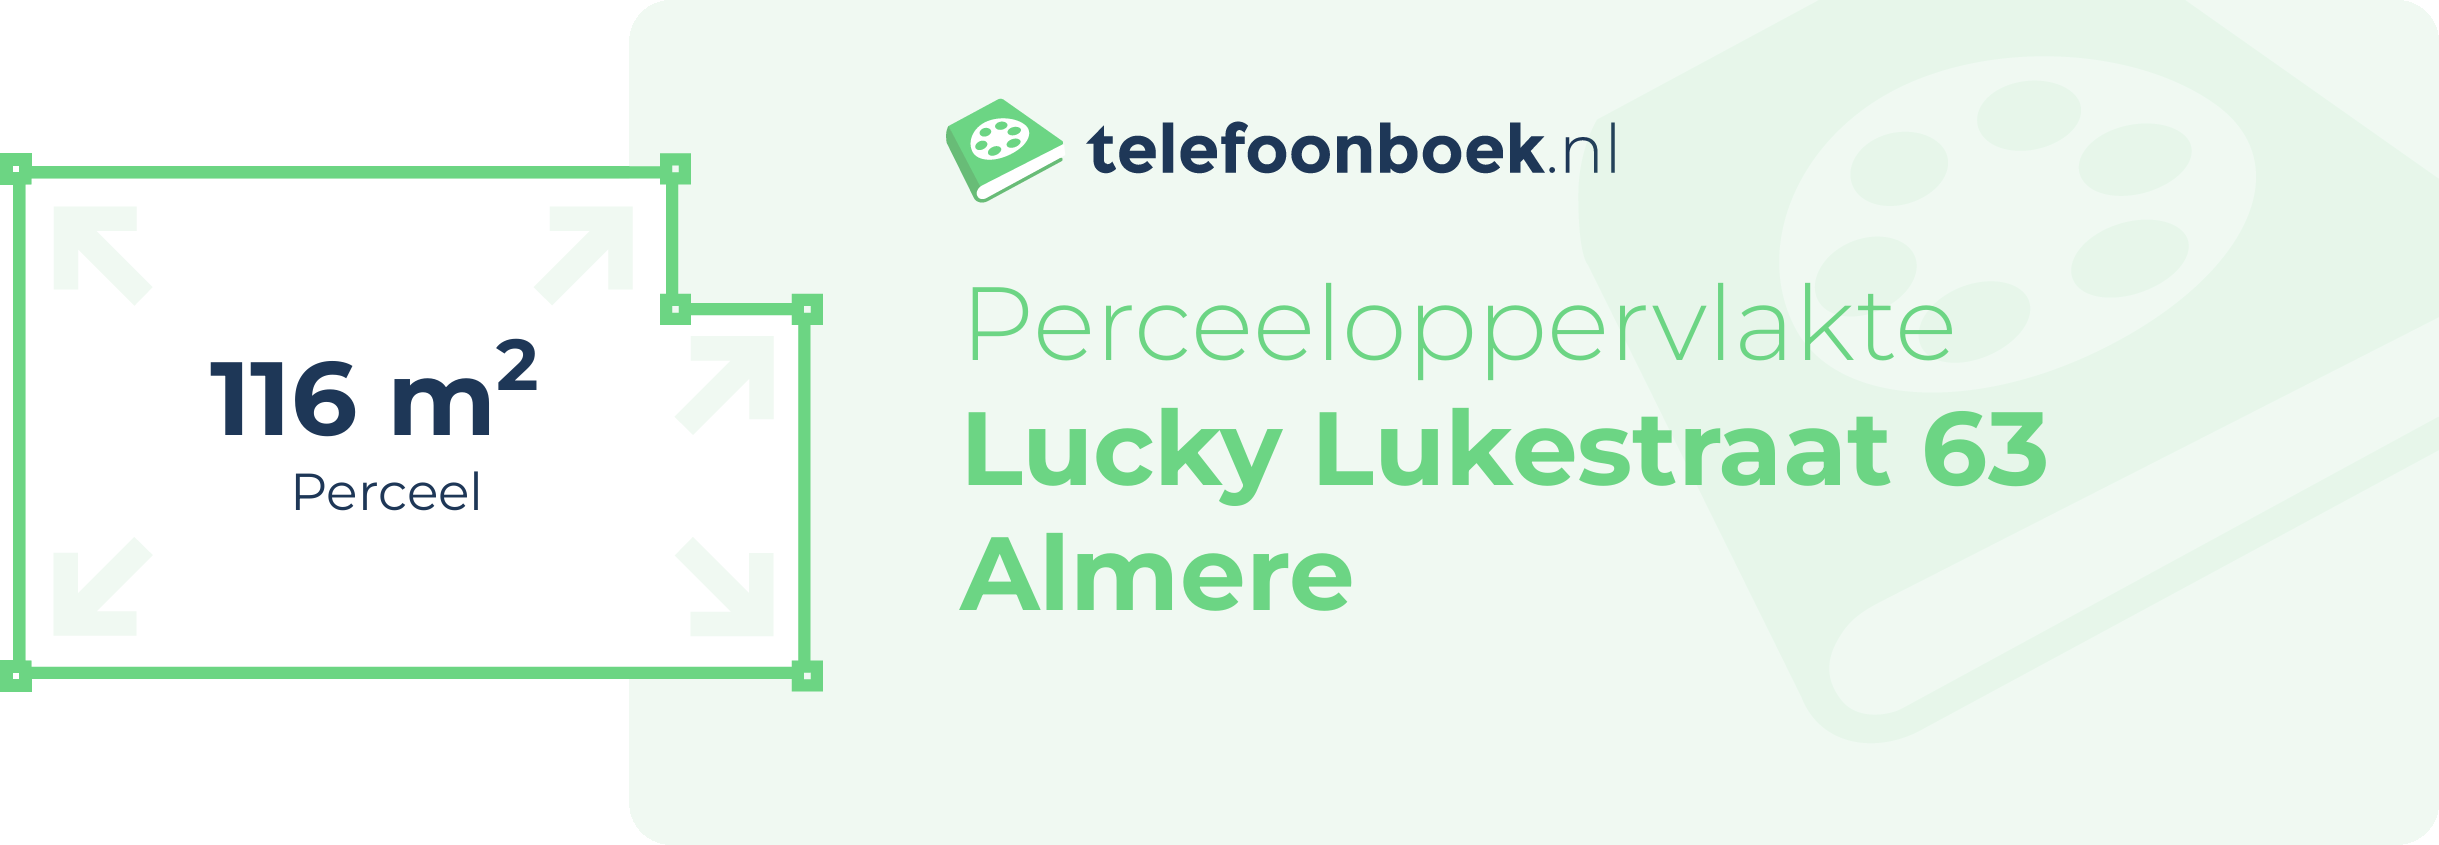 Perceeloppervlakte Lucky Lukestraat 63 Almere